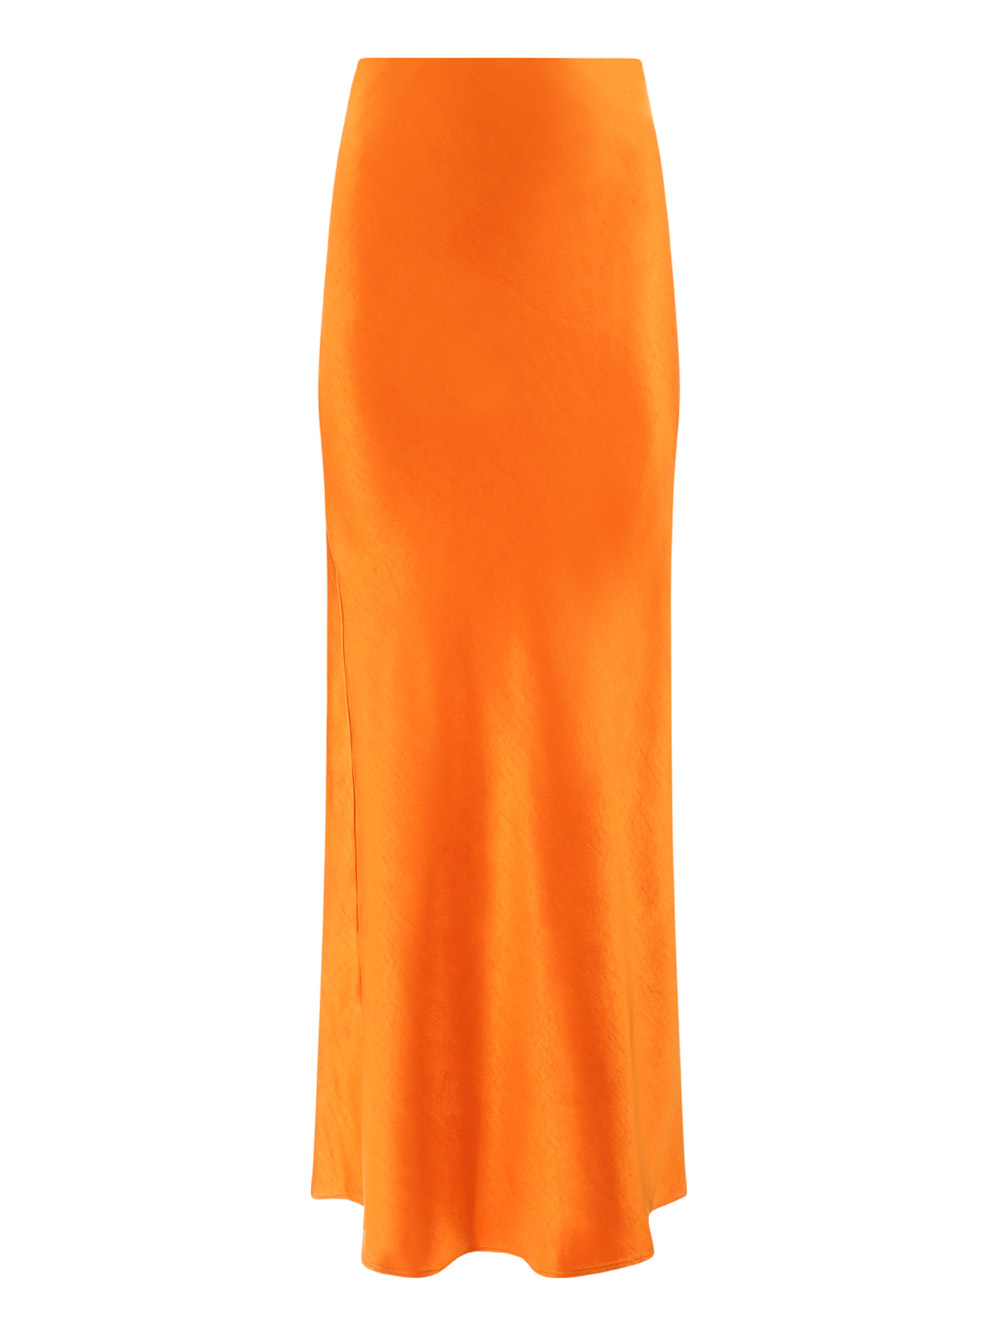 Fit Long Skirt In Arancio